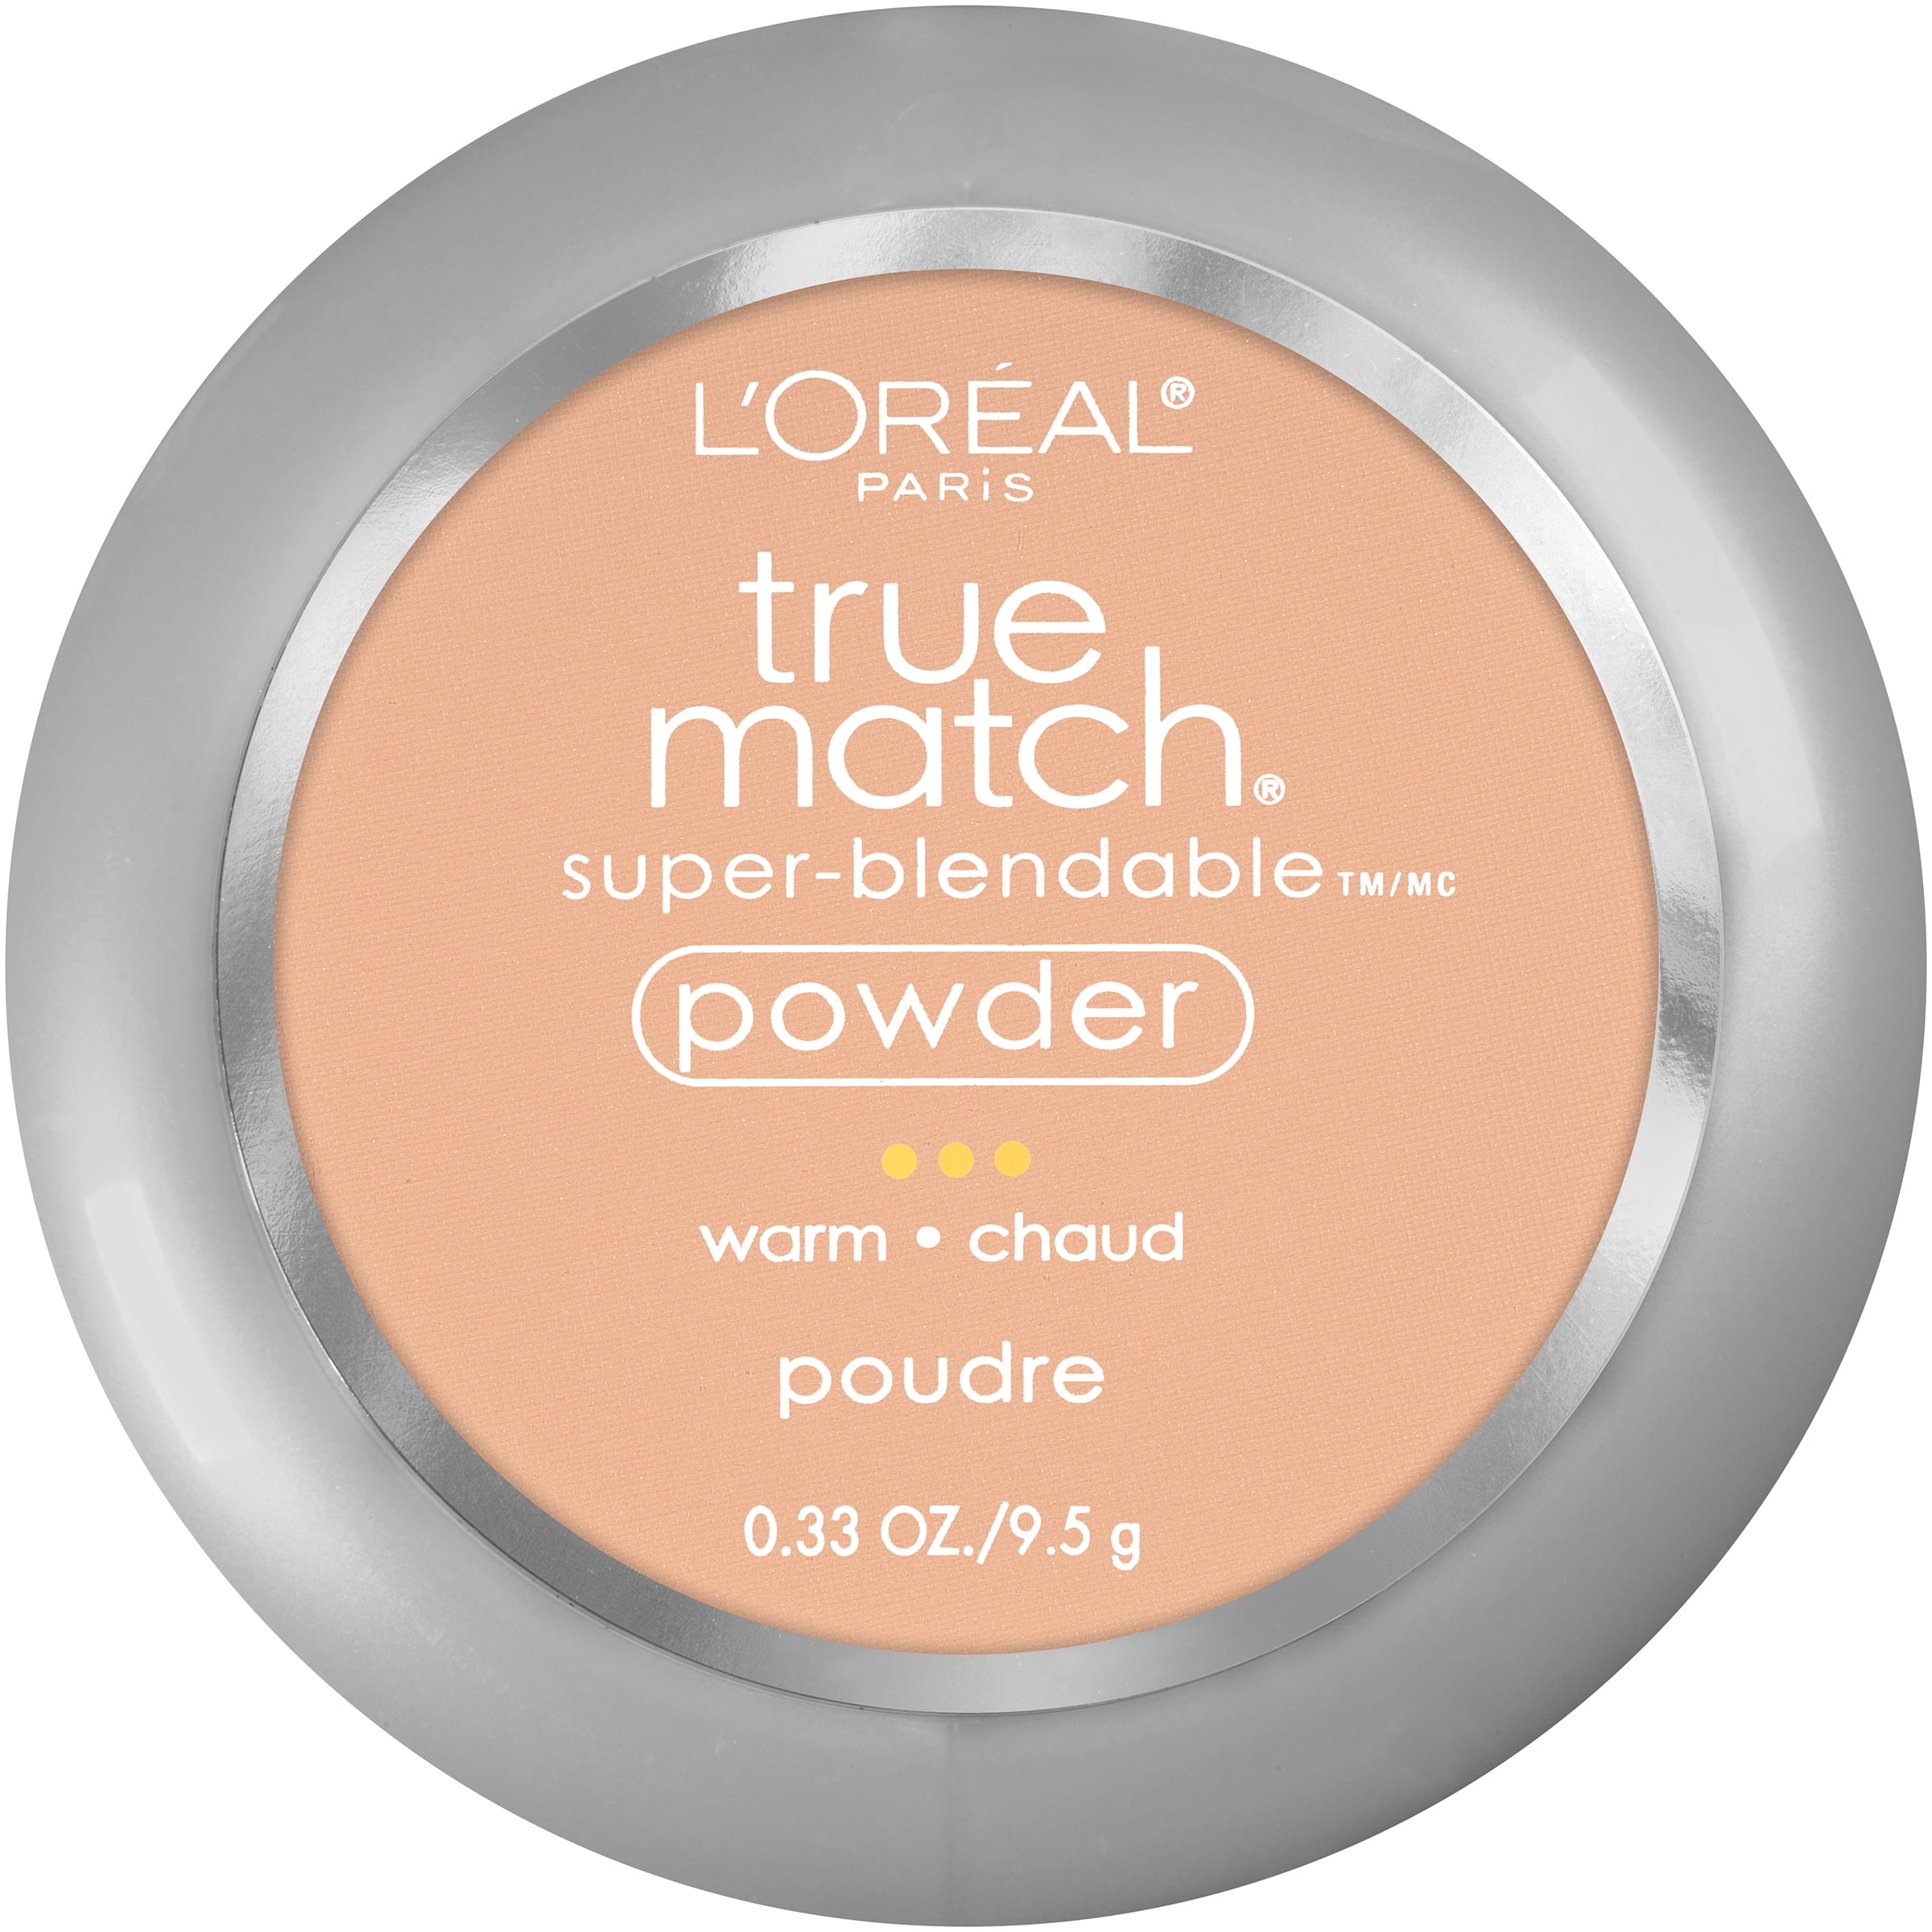 L'Oreal Paris True Match Super Blendable Oil Free Makeup Powder, Sand Beige, 0.33 oz